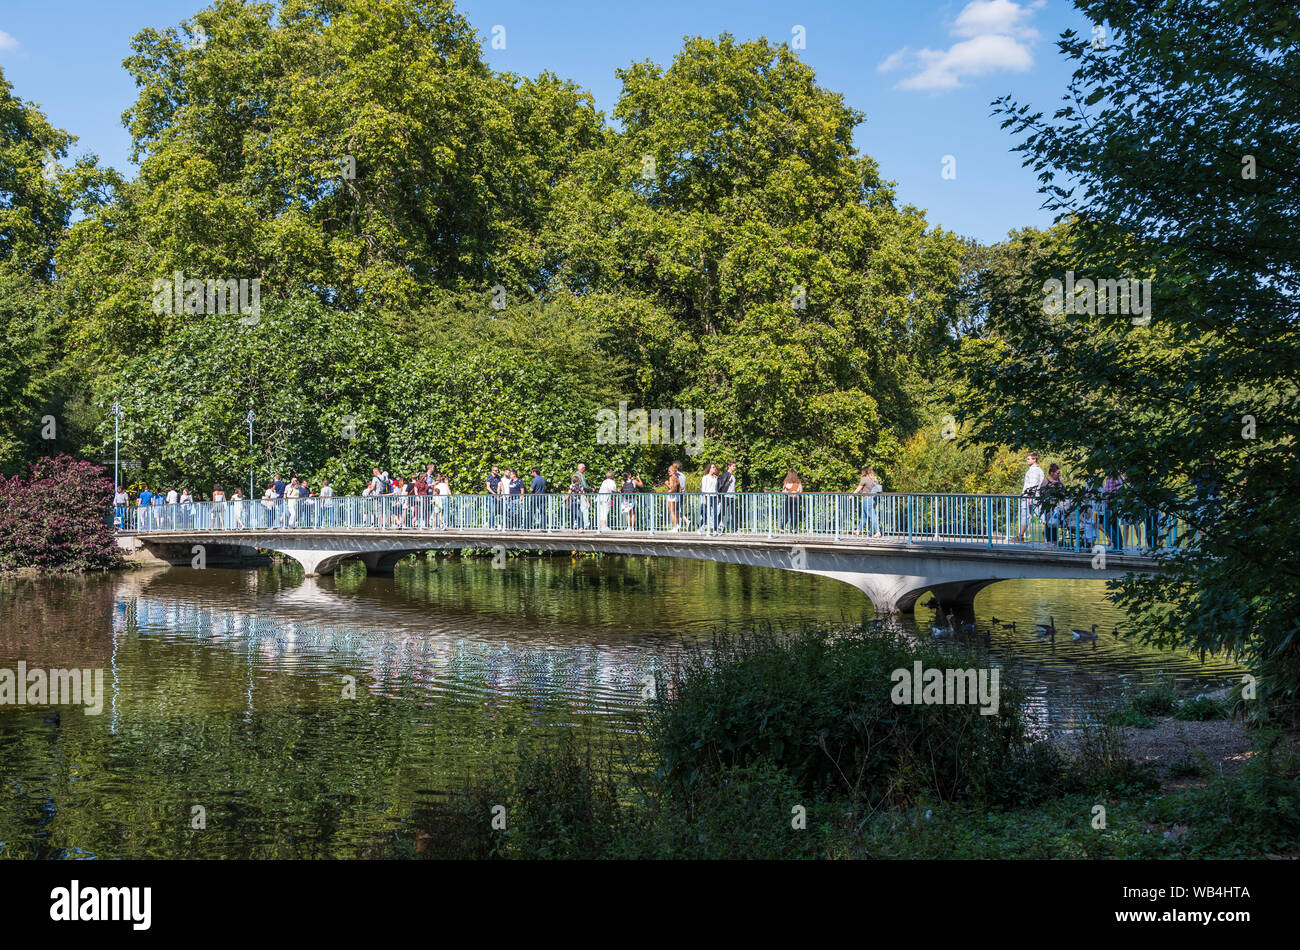 Personas que cruzan el Puente azul, un bajo arcos del puente peatonal de hormigón en St. James's Park, la ciudad de Westminster, en el centro de Londres, Inglaterra, Reino Unido. Foto de stock